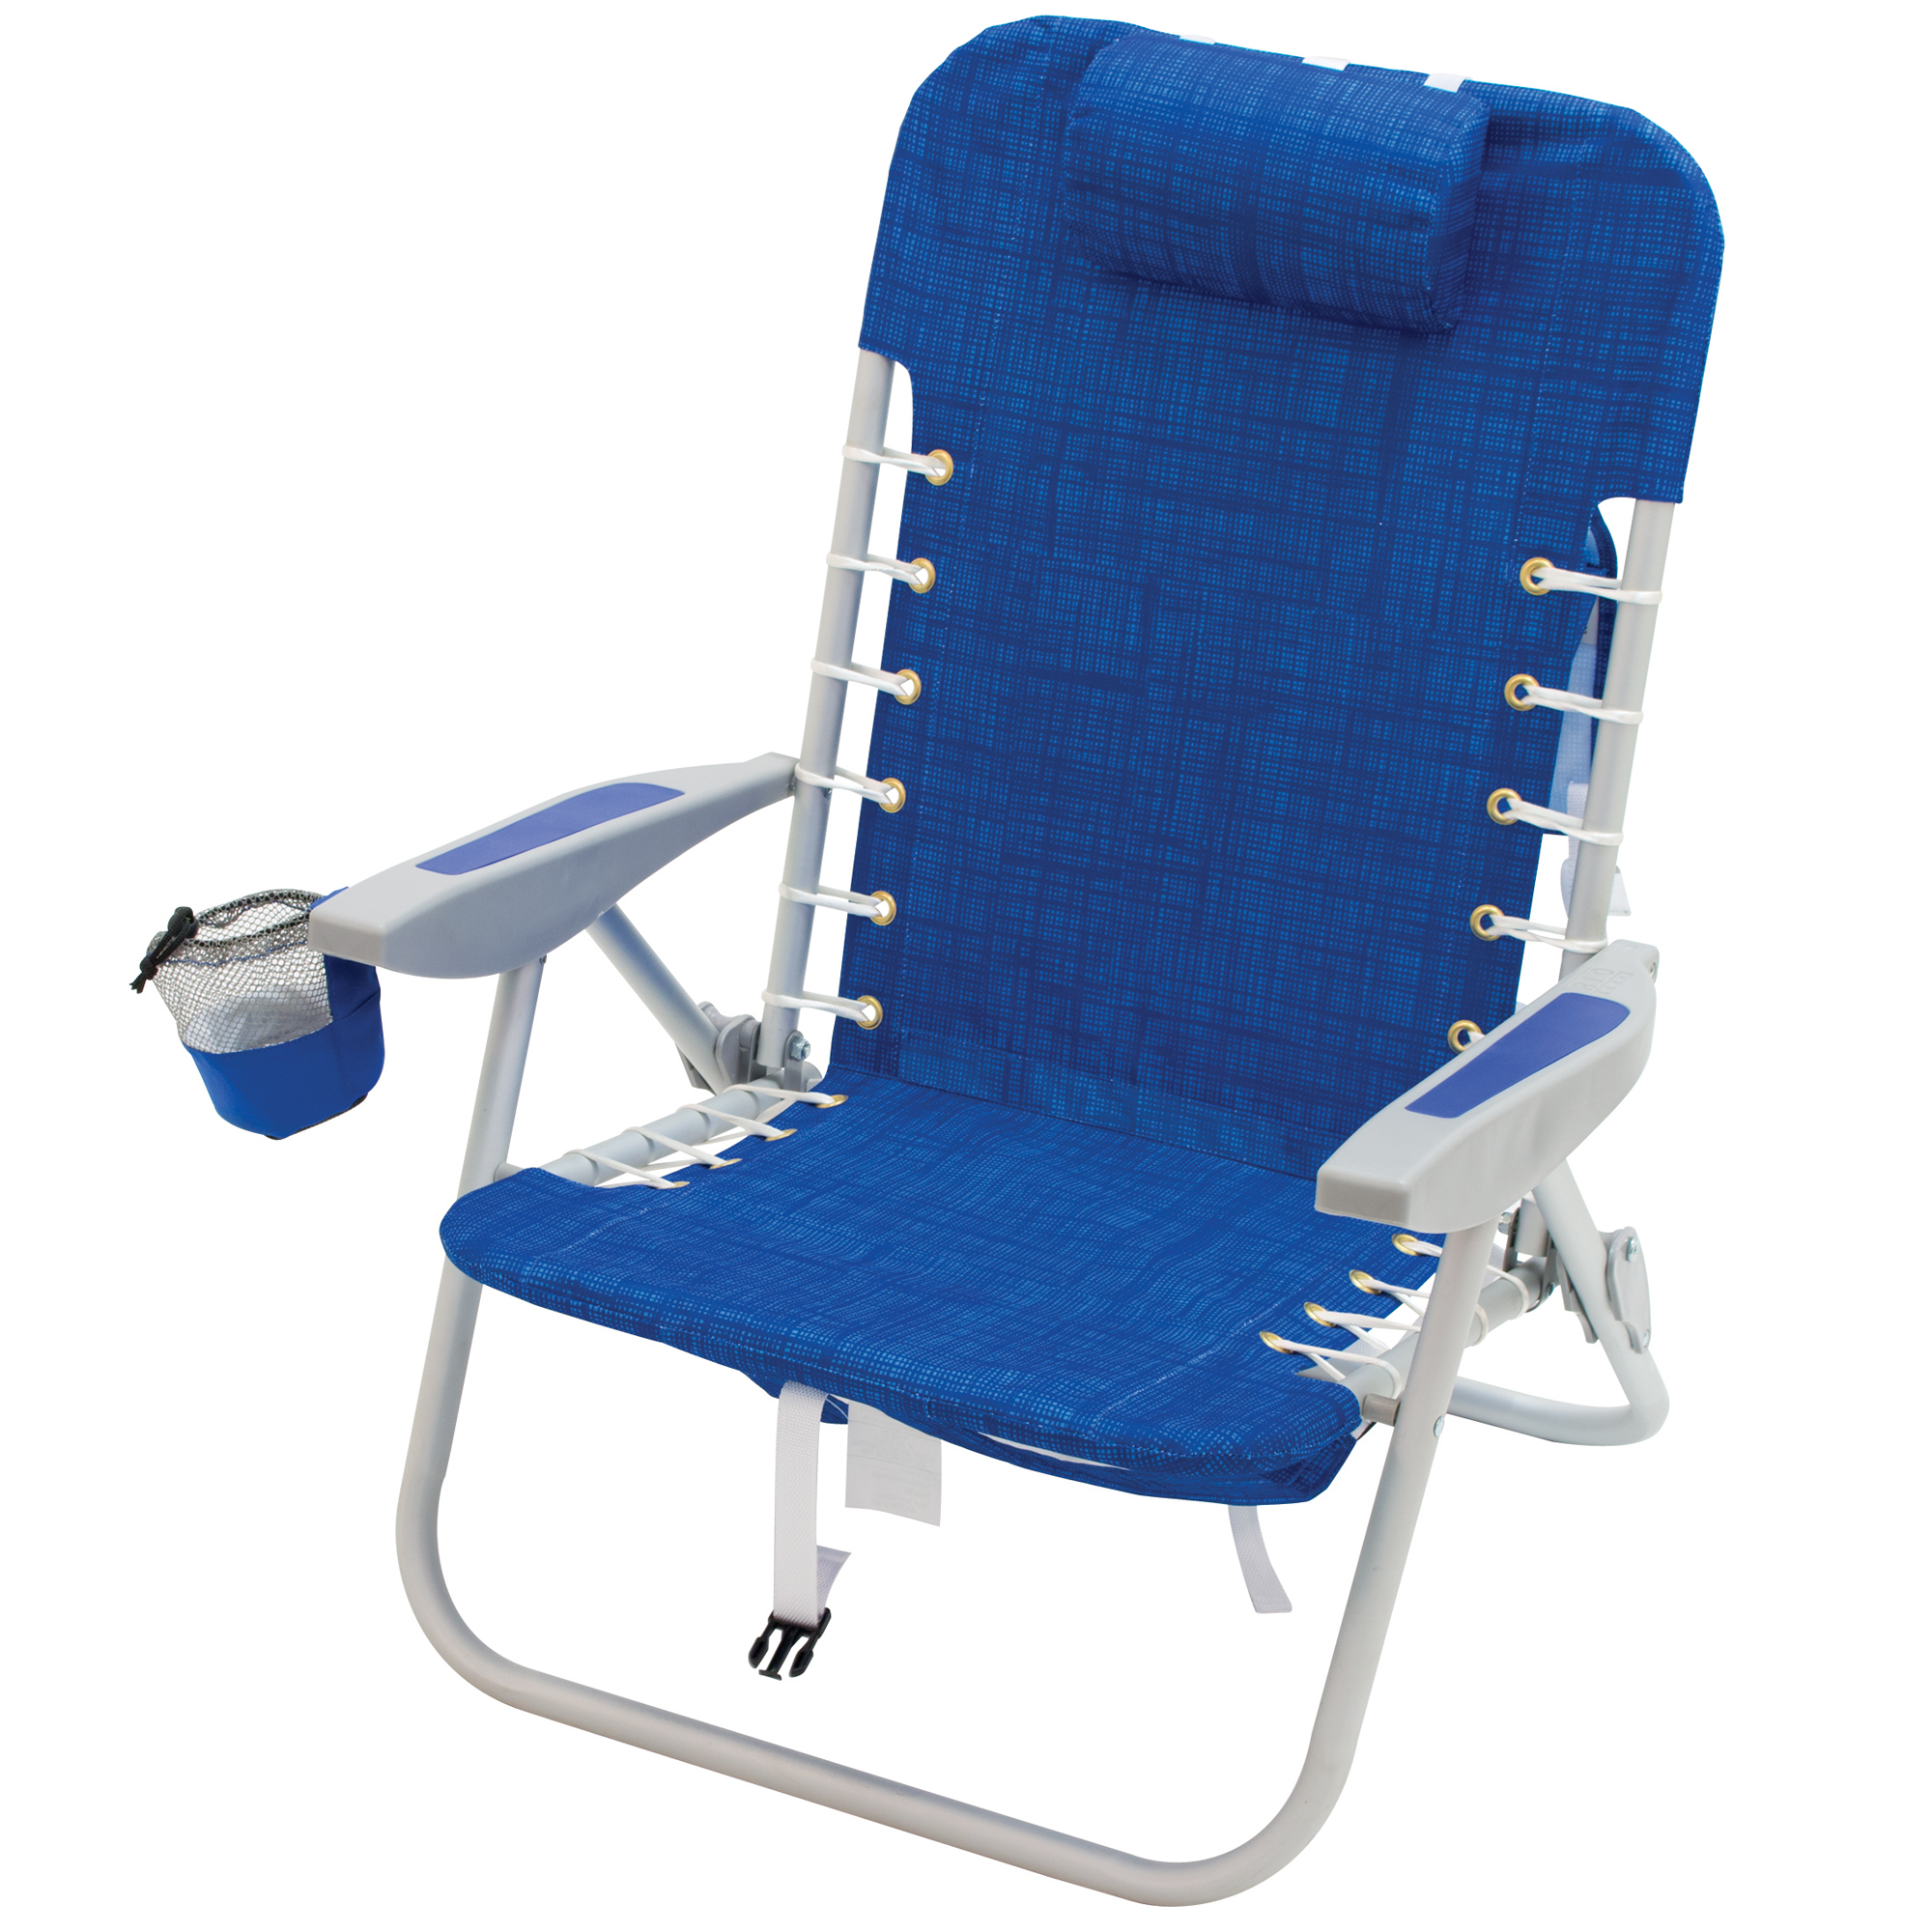 New Rio Gear Beach Chair for Simple Design